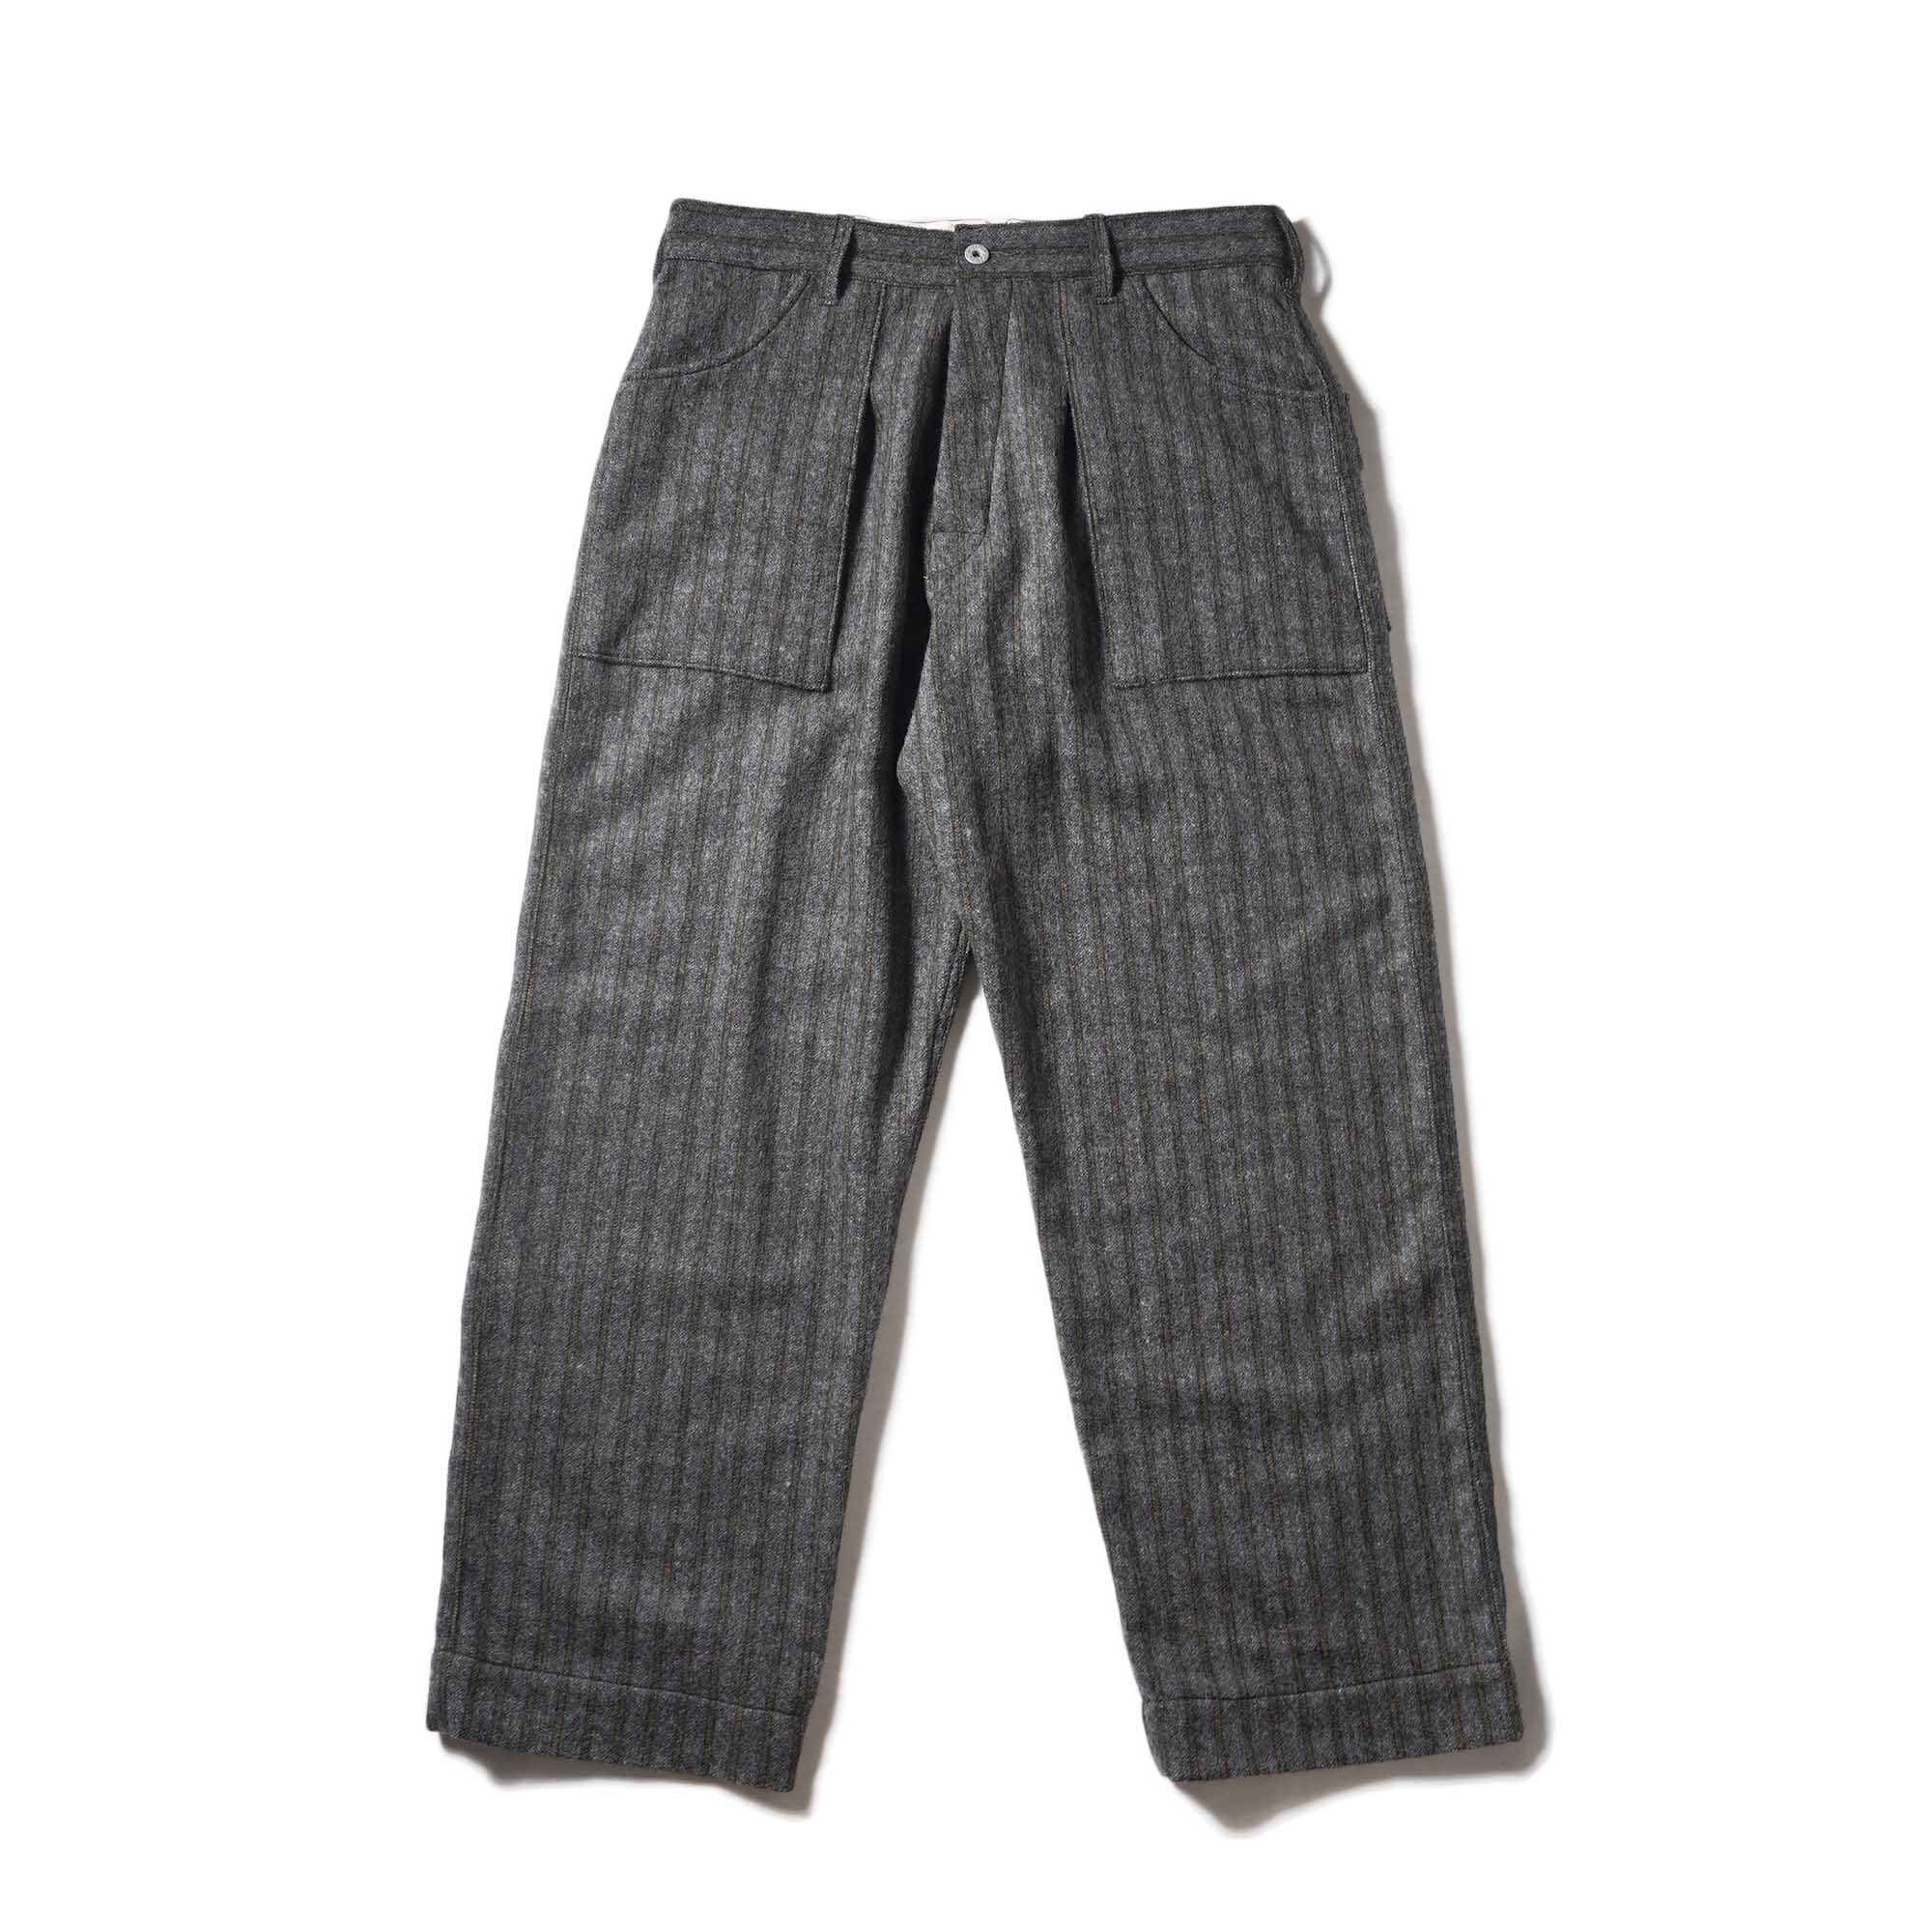 Willow Pants / P-001 - Stripe-Wool Pants (Charcoal)